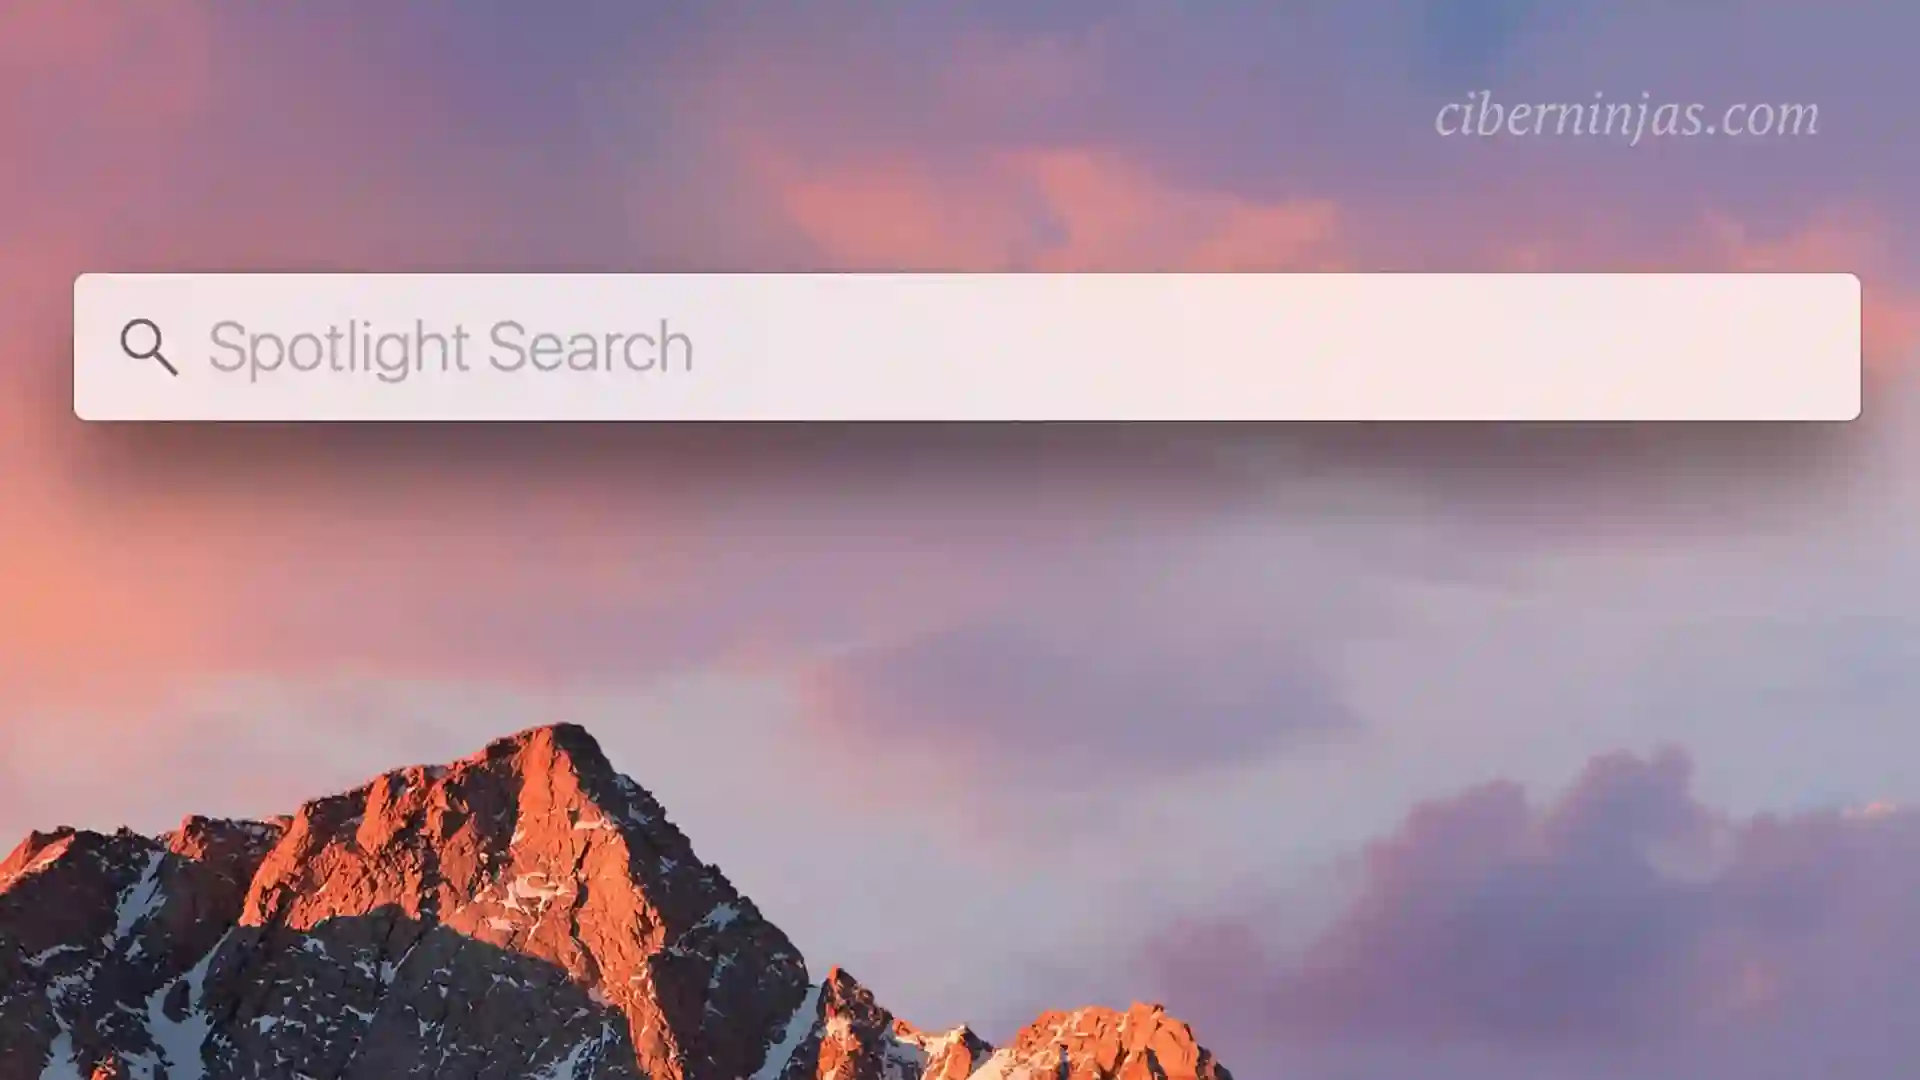 ¿Cómo buscar en tu iPhone o iPad usando Spotlight Search?